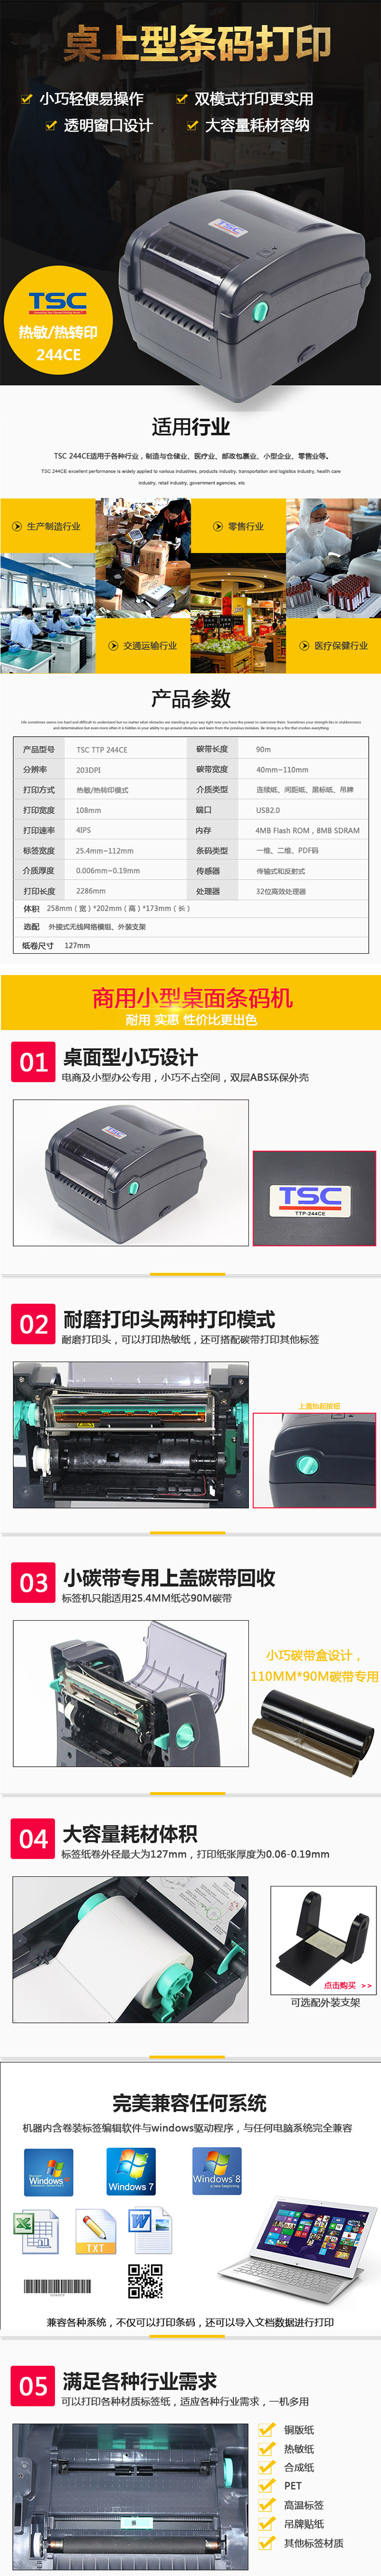 标价签打印机/tsc244ce打印机(图1)